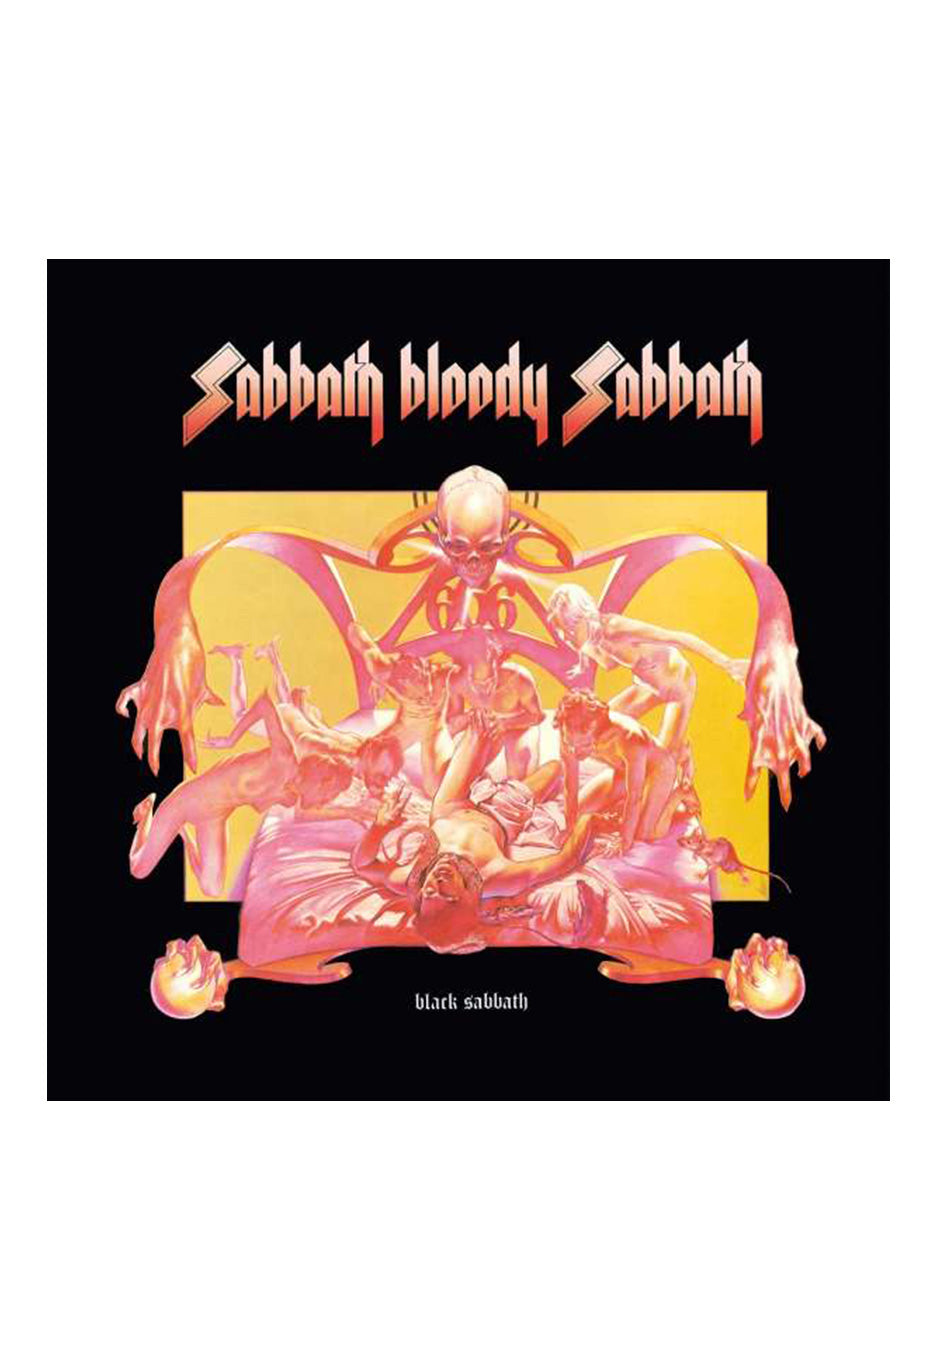 Black Sabbath - Sabbath Bloody Sabbath - Vinyl